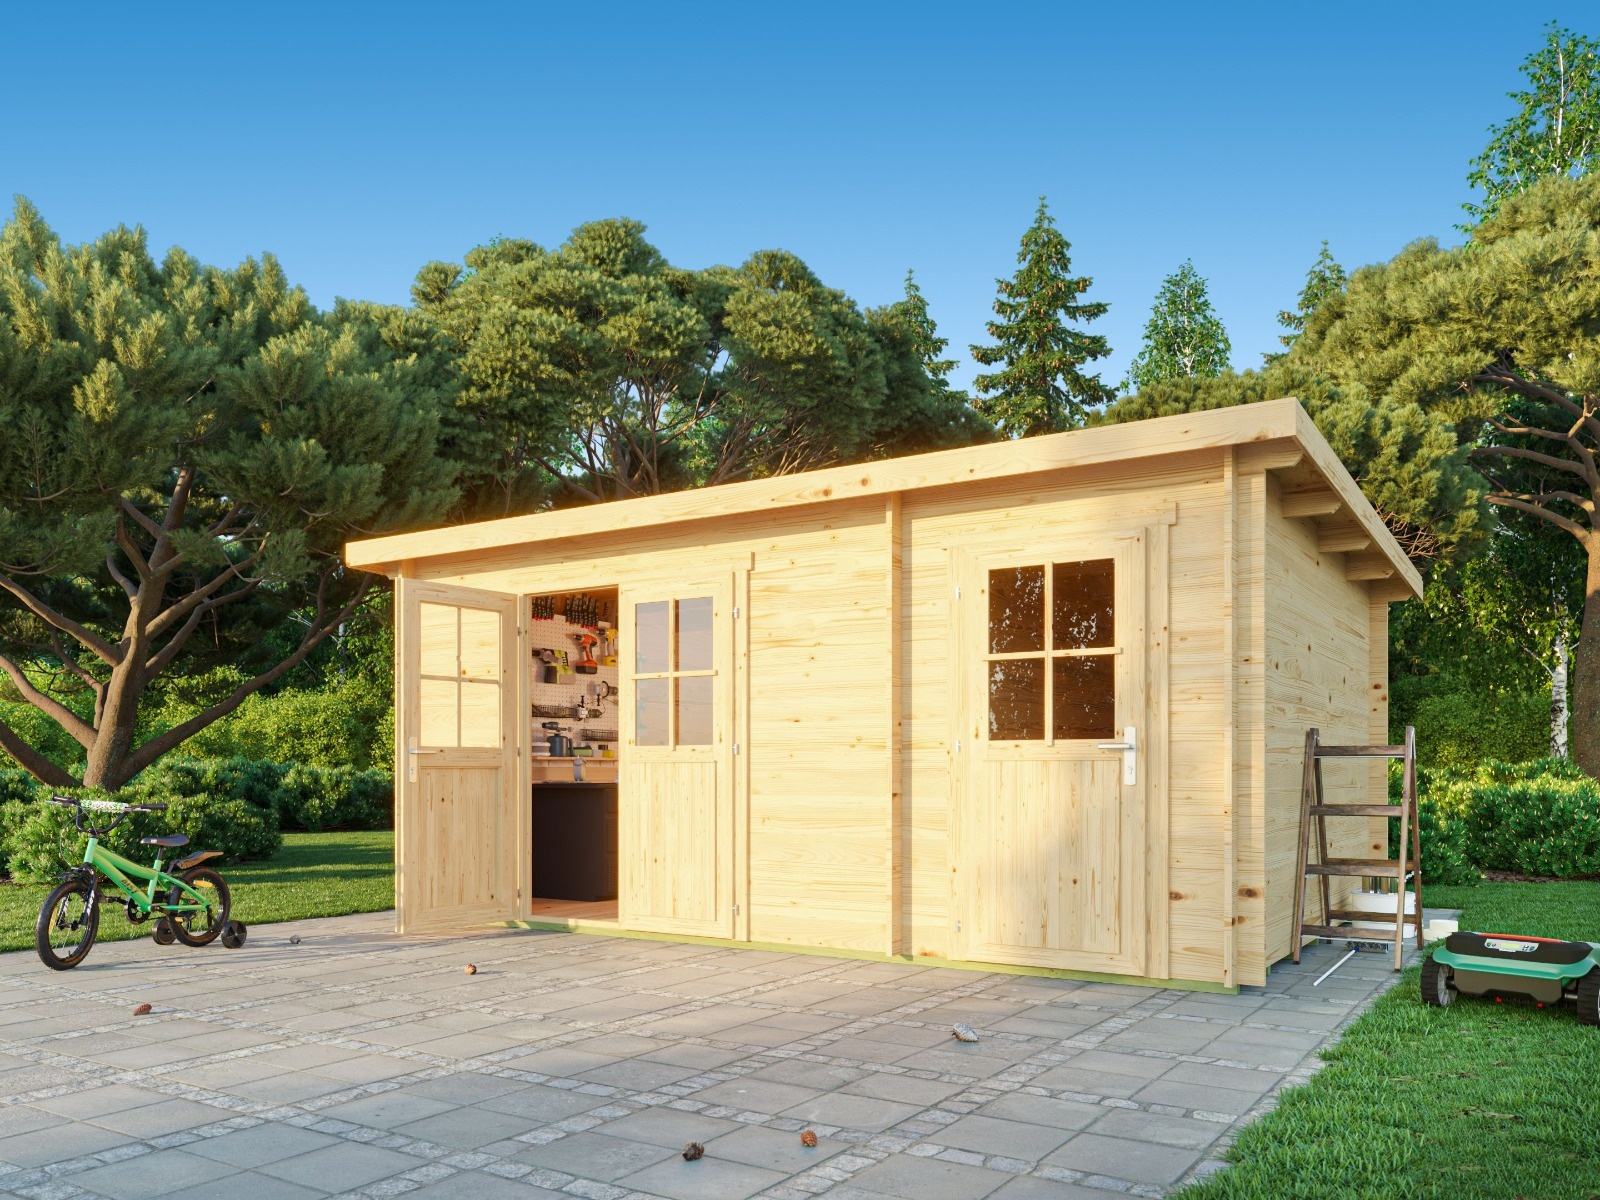 Wooden garden sheds